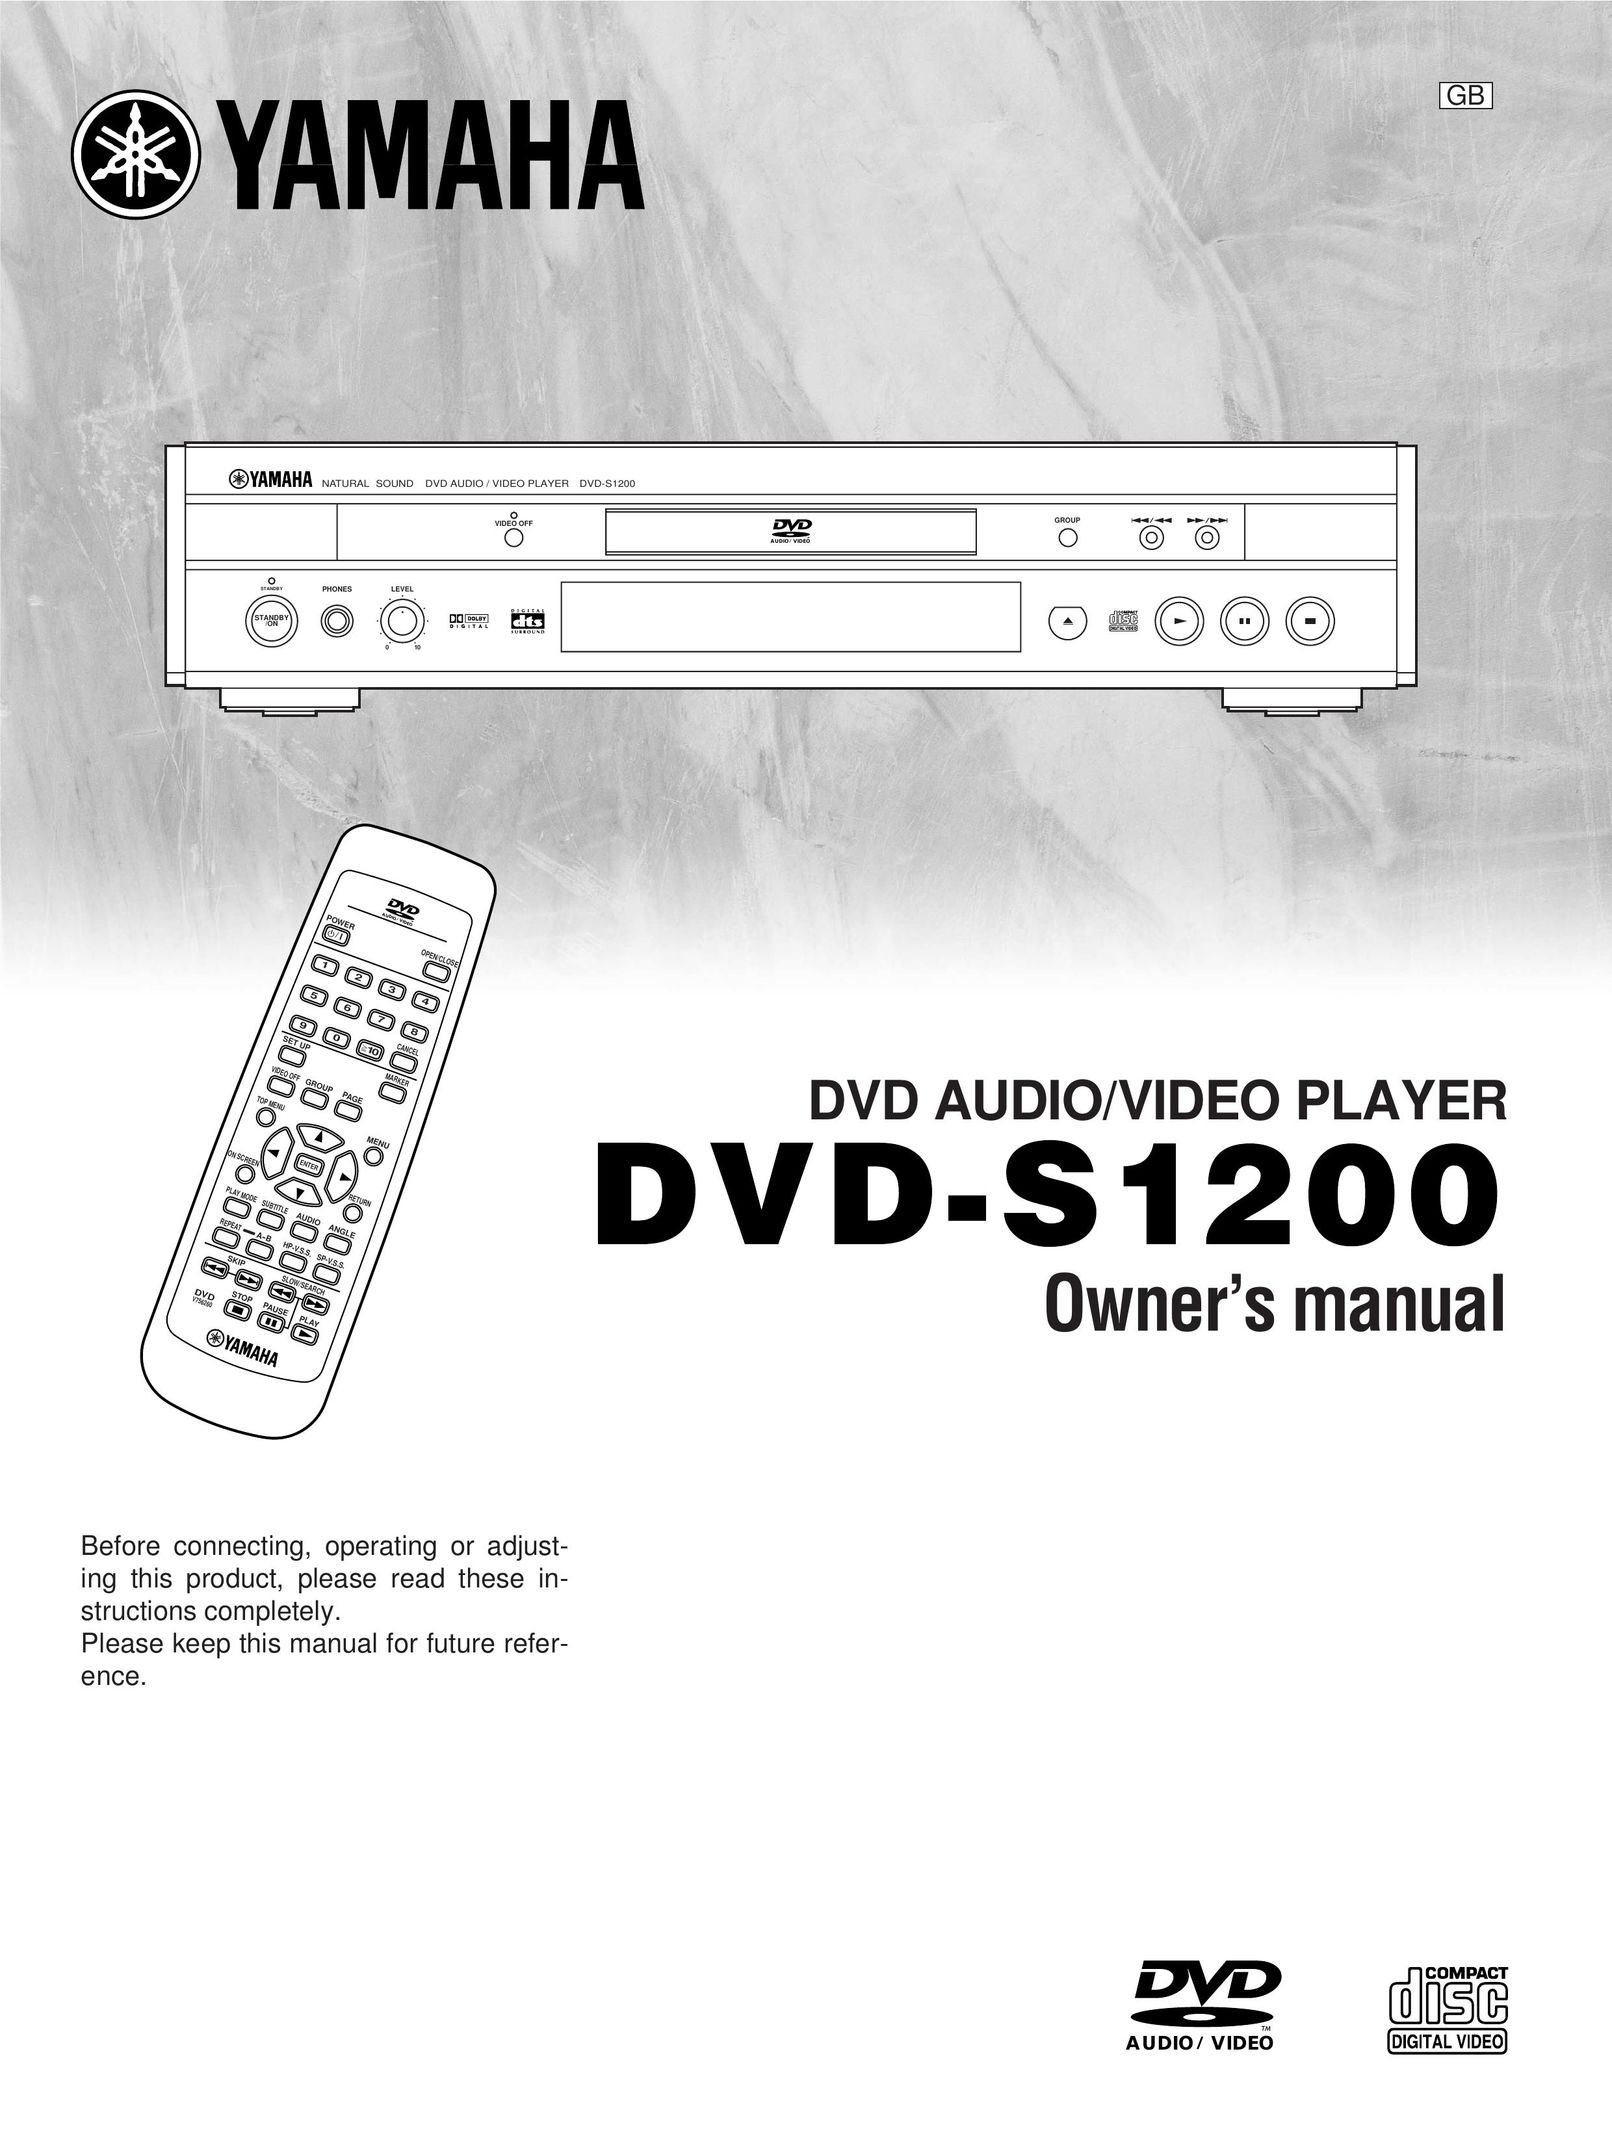 Yamaha DVD-S1200 DVD Player User Manual